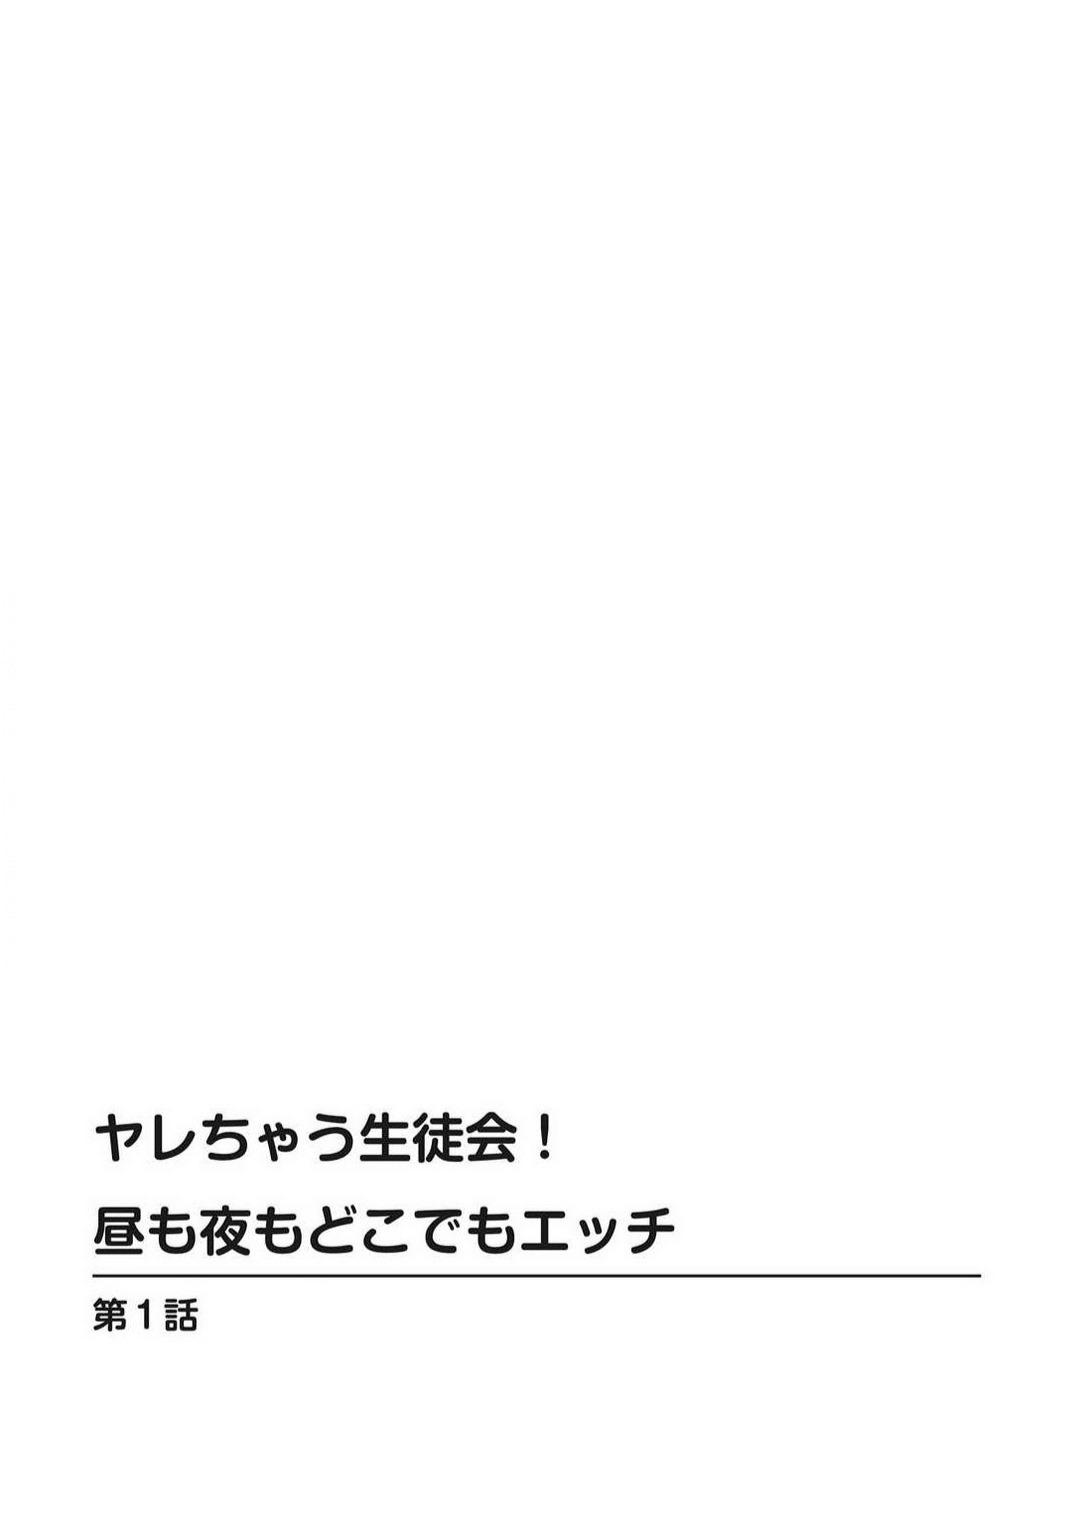 Tats Yarechau Seito-Kai! Hiru mo Yoru mo Doko Demo Etchi~Chp.1-3 Plumper - Picture 2